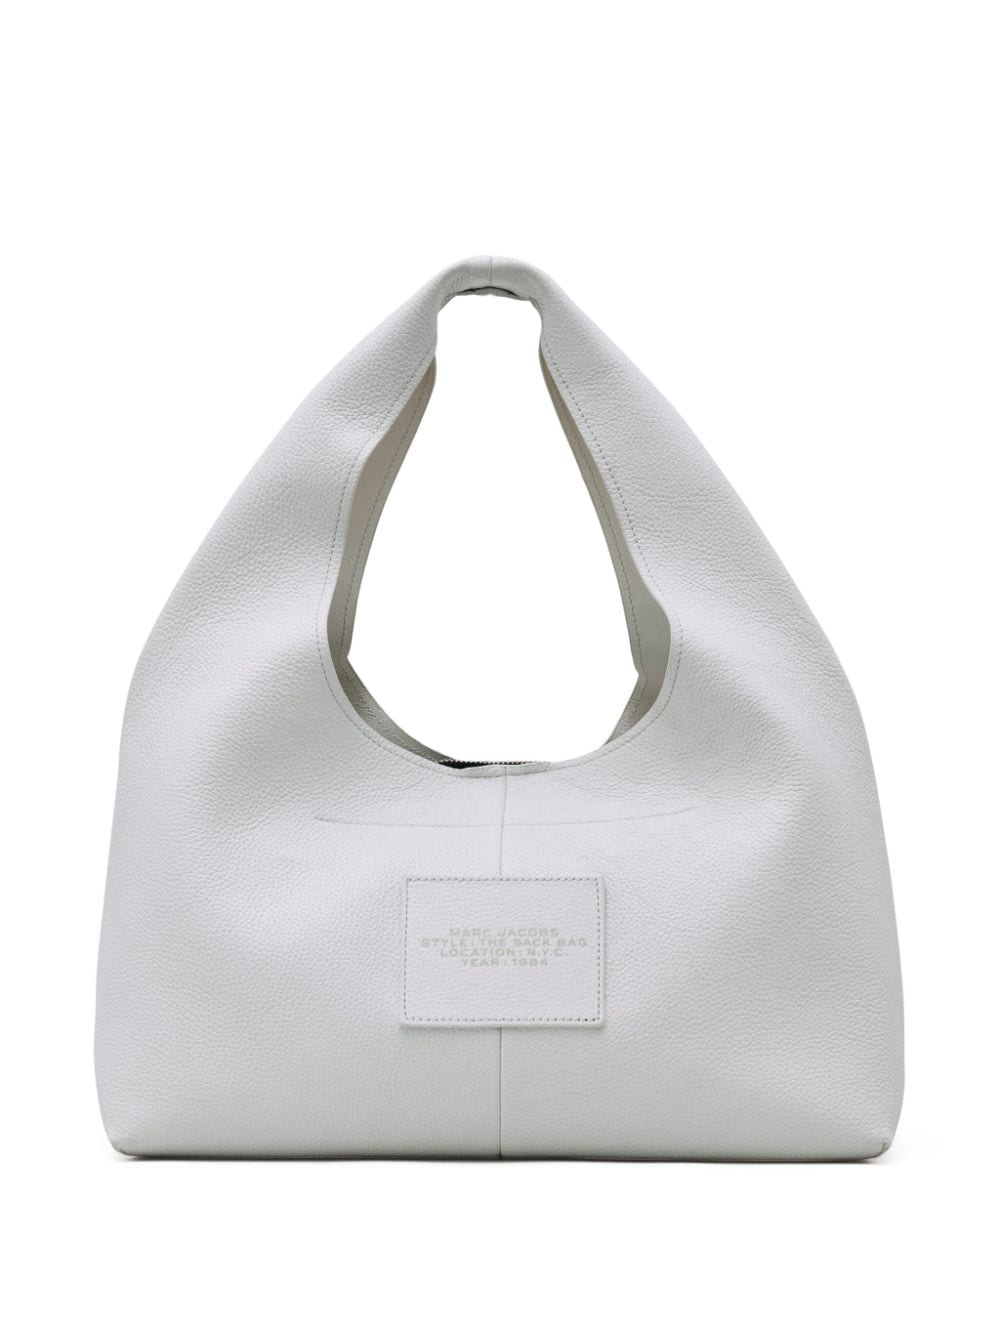 'The Sack Bag' bag